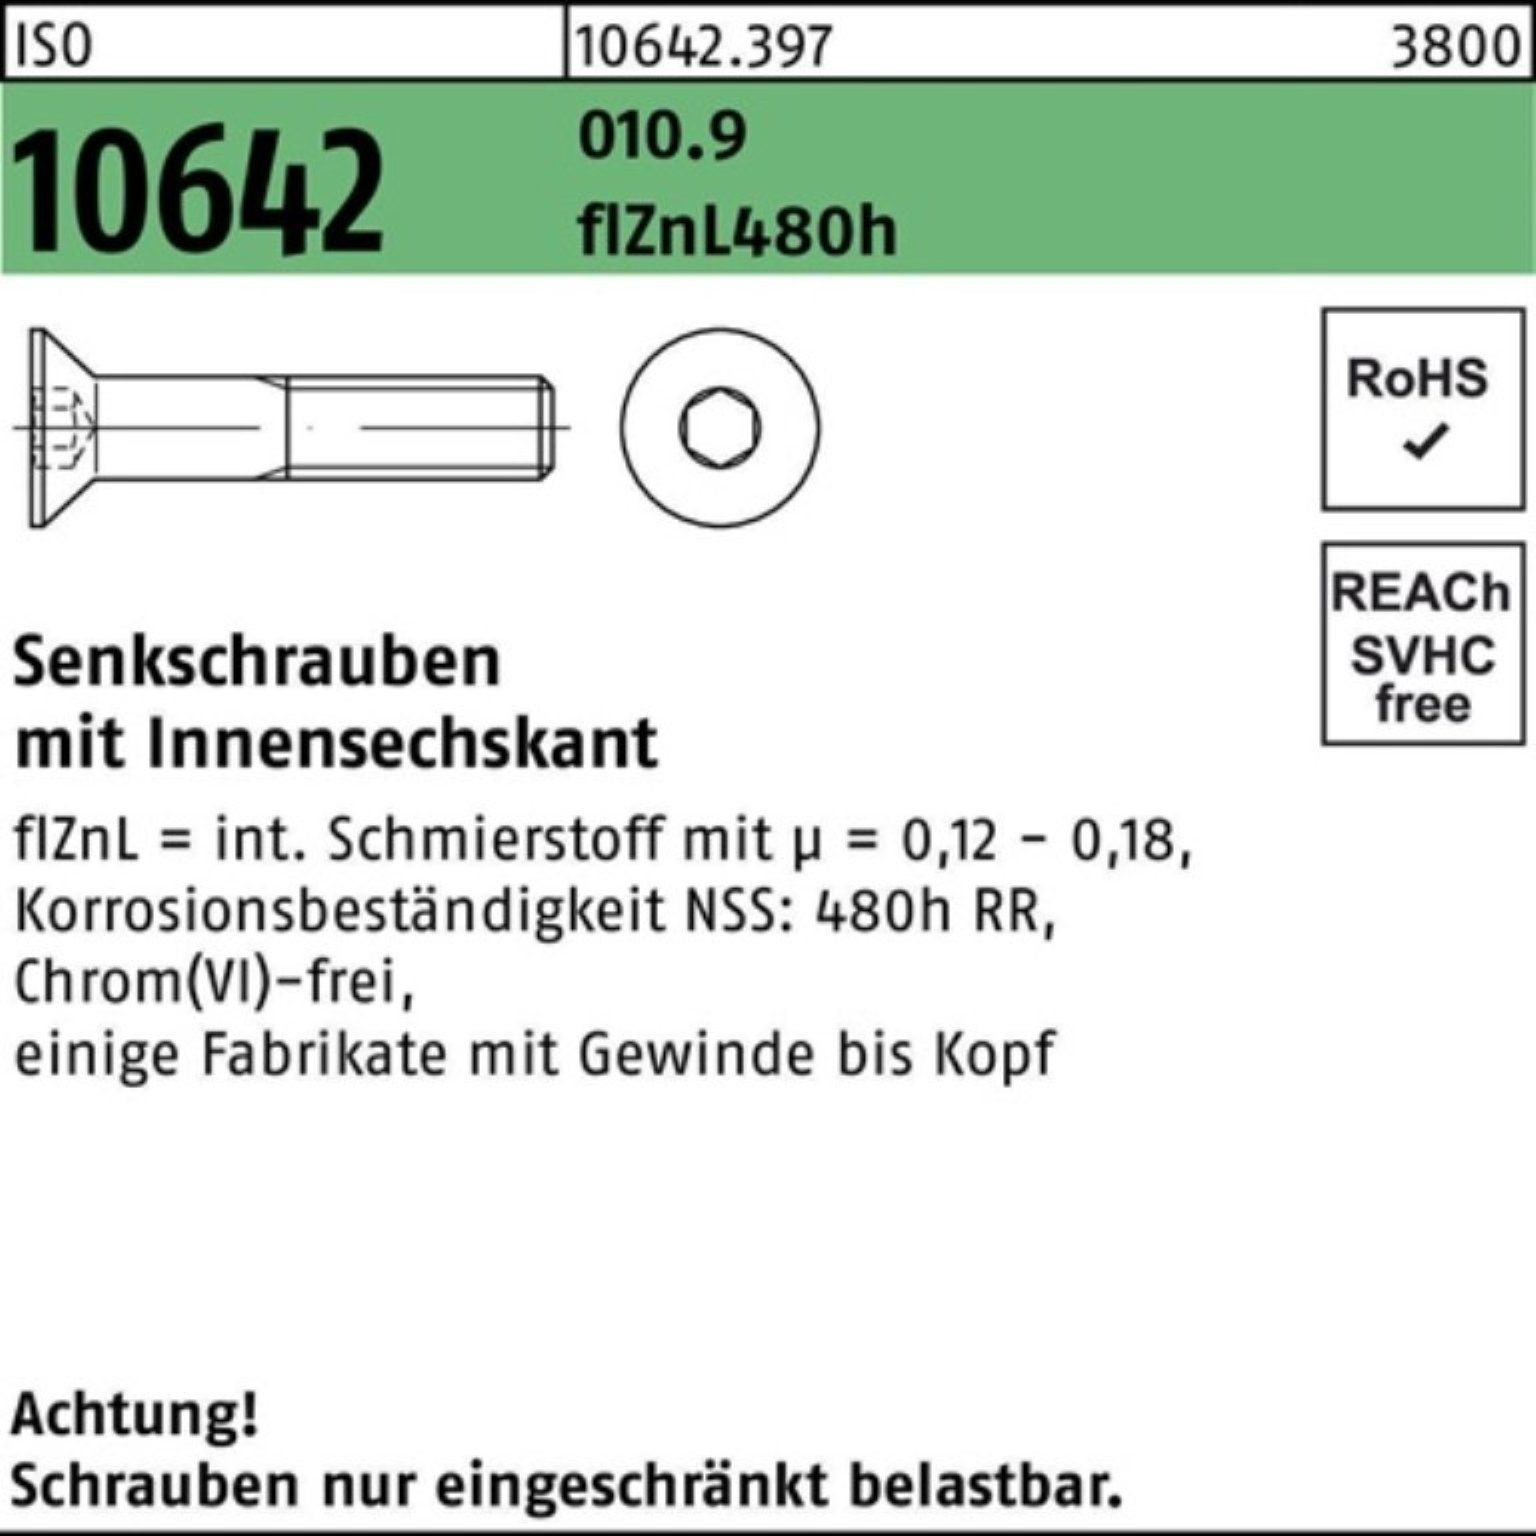 Reyher Senkschraube 100er Pack Senkschraube ISO 10642 Innen-6kt M12x35 010.9 flZnL 480h zi